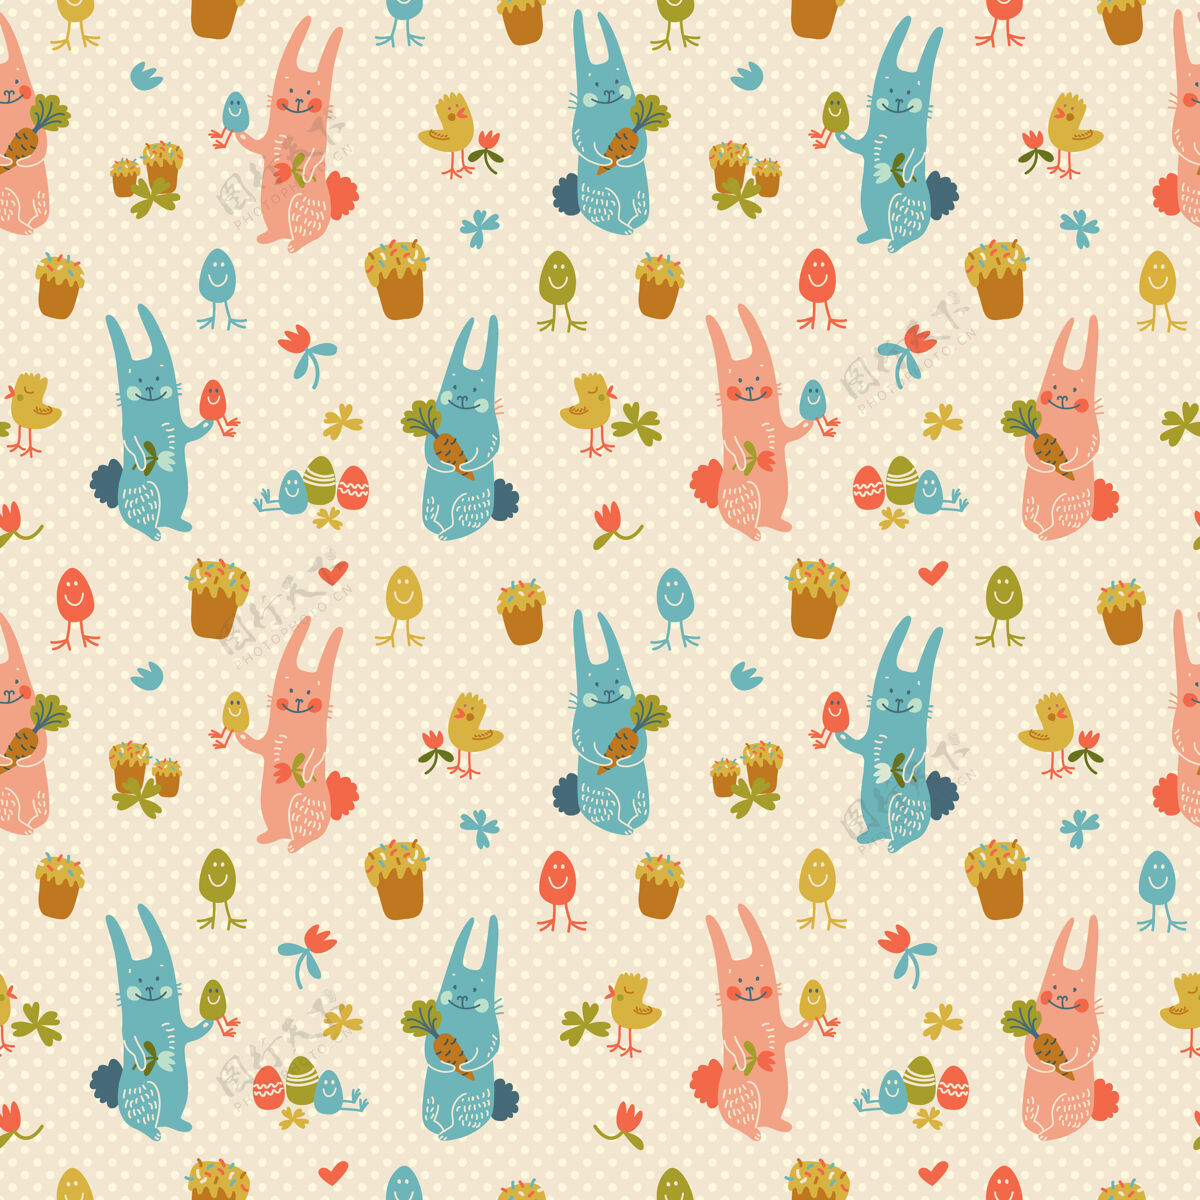 事件有质感的复活节快乐无缝图案 用柔和的颜色与兔子 鸡蛋 胡萝卜和小鸡涂鸦传统小鸡准备打印